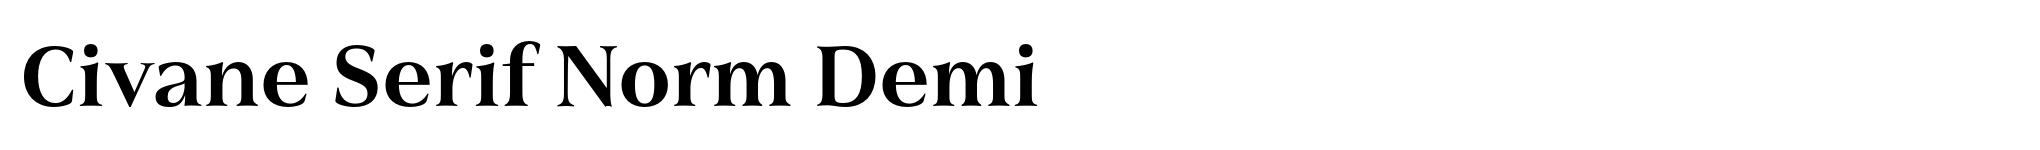 Civane Serif Norm Demi image